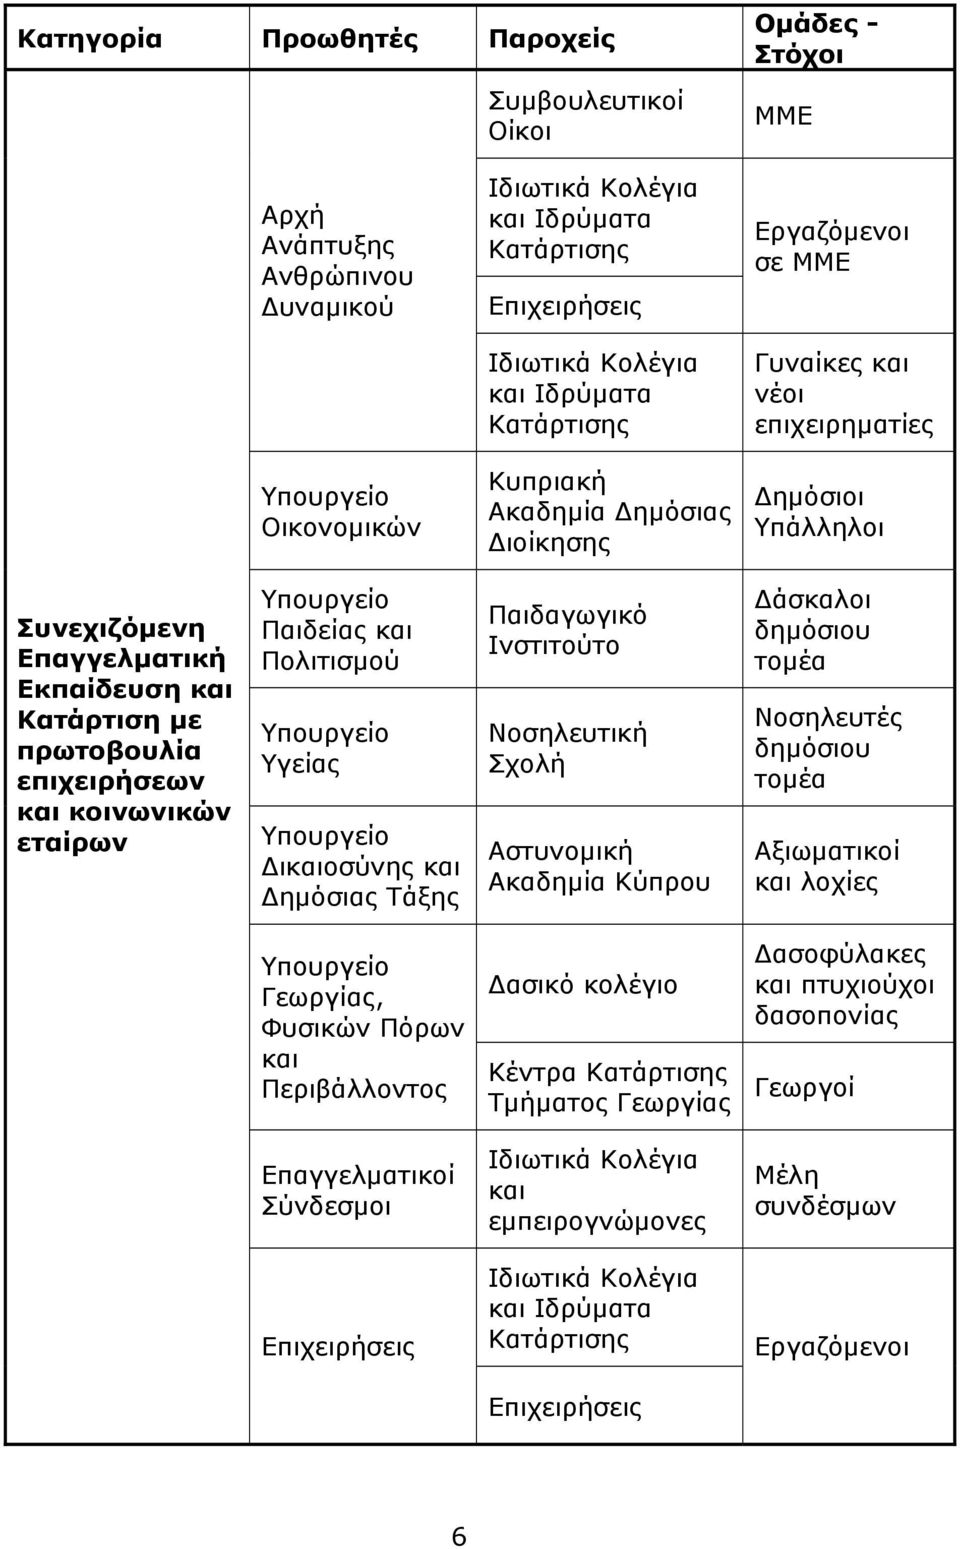 επιχειρήσεων και κοινωνικών εταίρων Υπουργείο Παιδείας και Πολιτισμού Υπουργείο Υγείας Υπουργείο Δικαιοσύνης και Δημόσιας Τάξης Παιδαγωγικό Ινστιτούτο Νοσηλευτική Σχολή Αστυνομική Ακαδημία Κύπρου